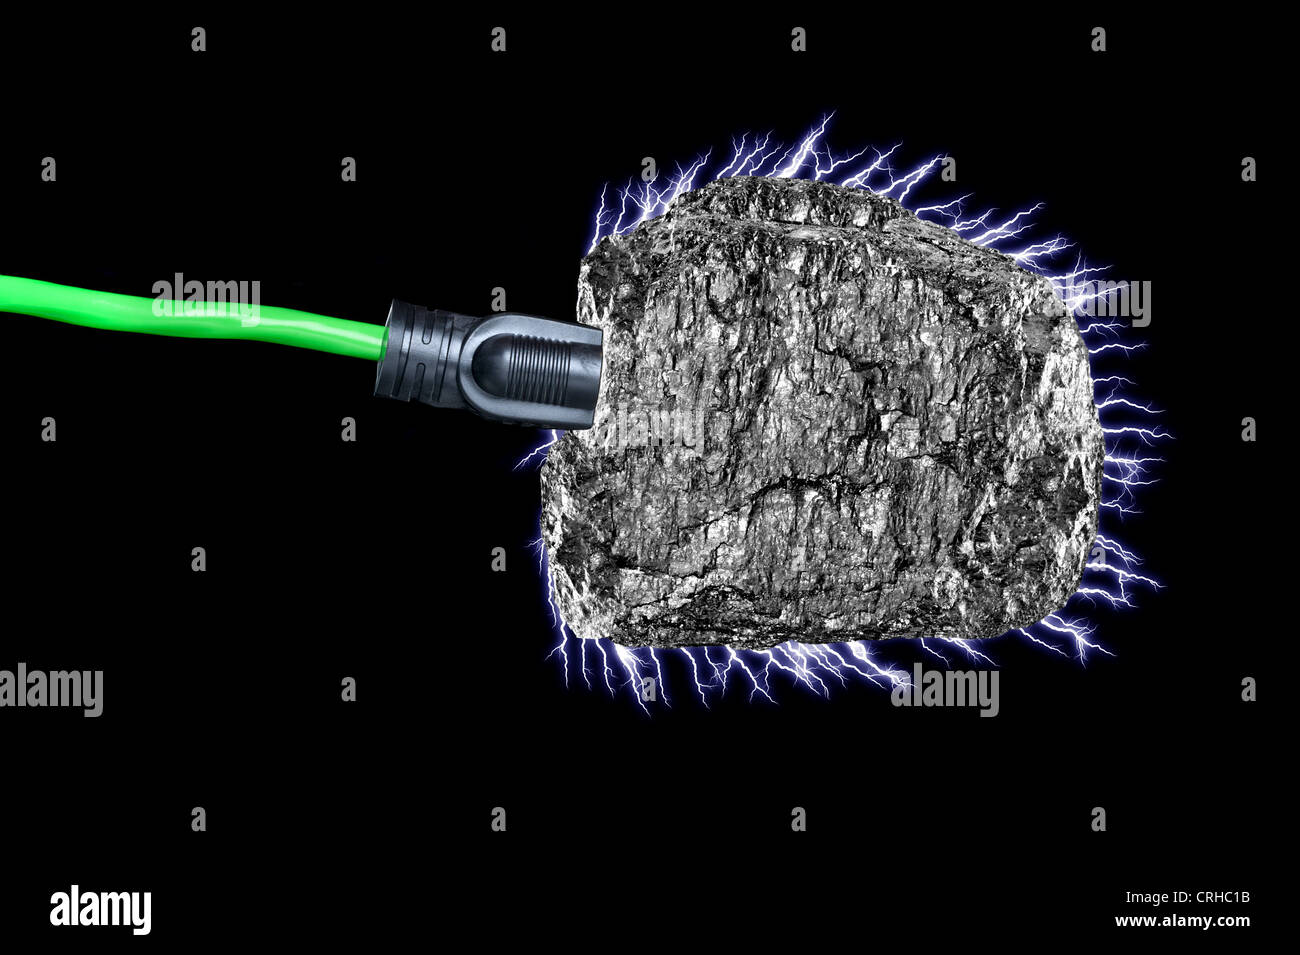 Imagen conceptual de un cordón de extensión enchufado a un trozo de carbón bituminoso con corriente eléctrica que fluye. Foto de stock